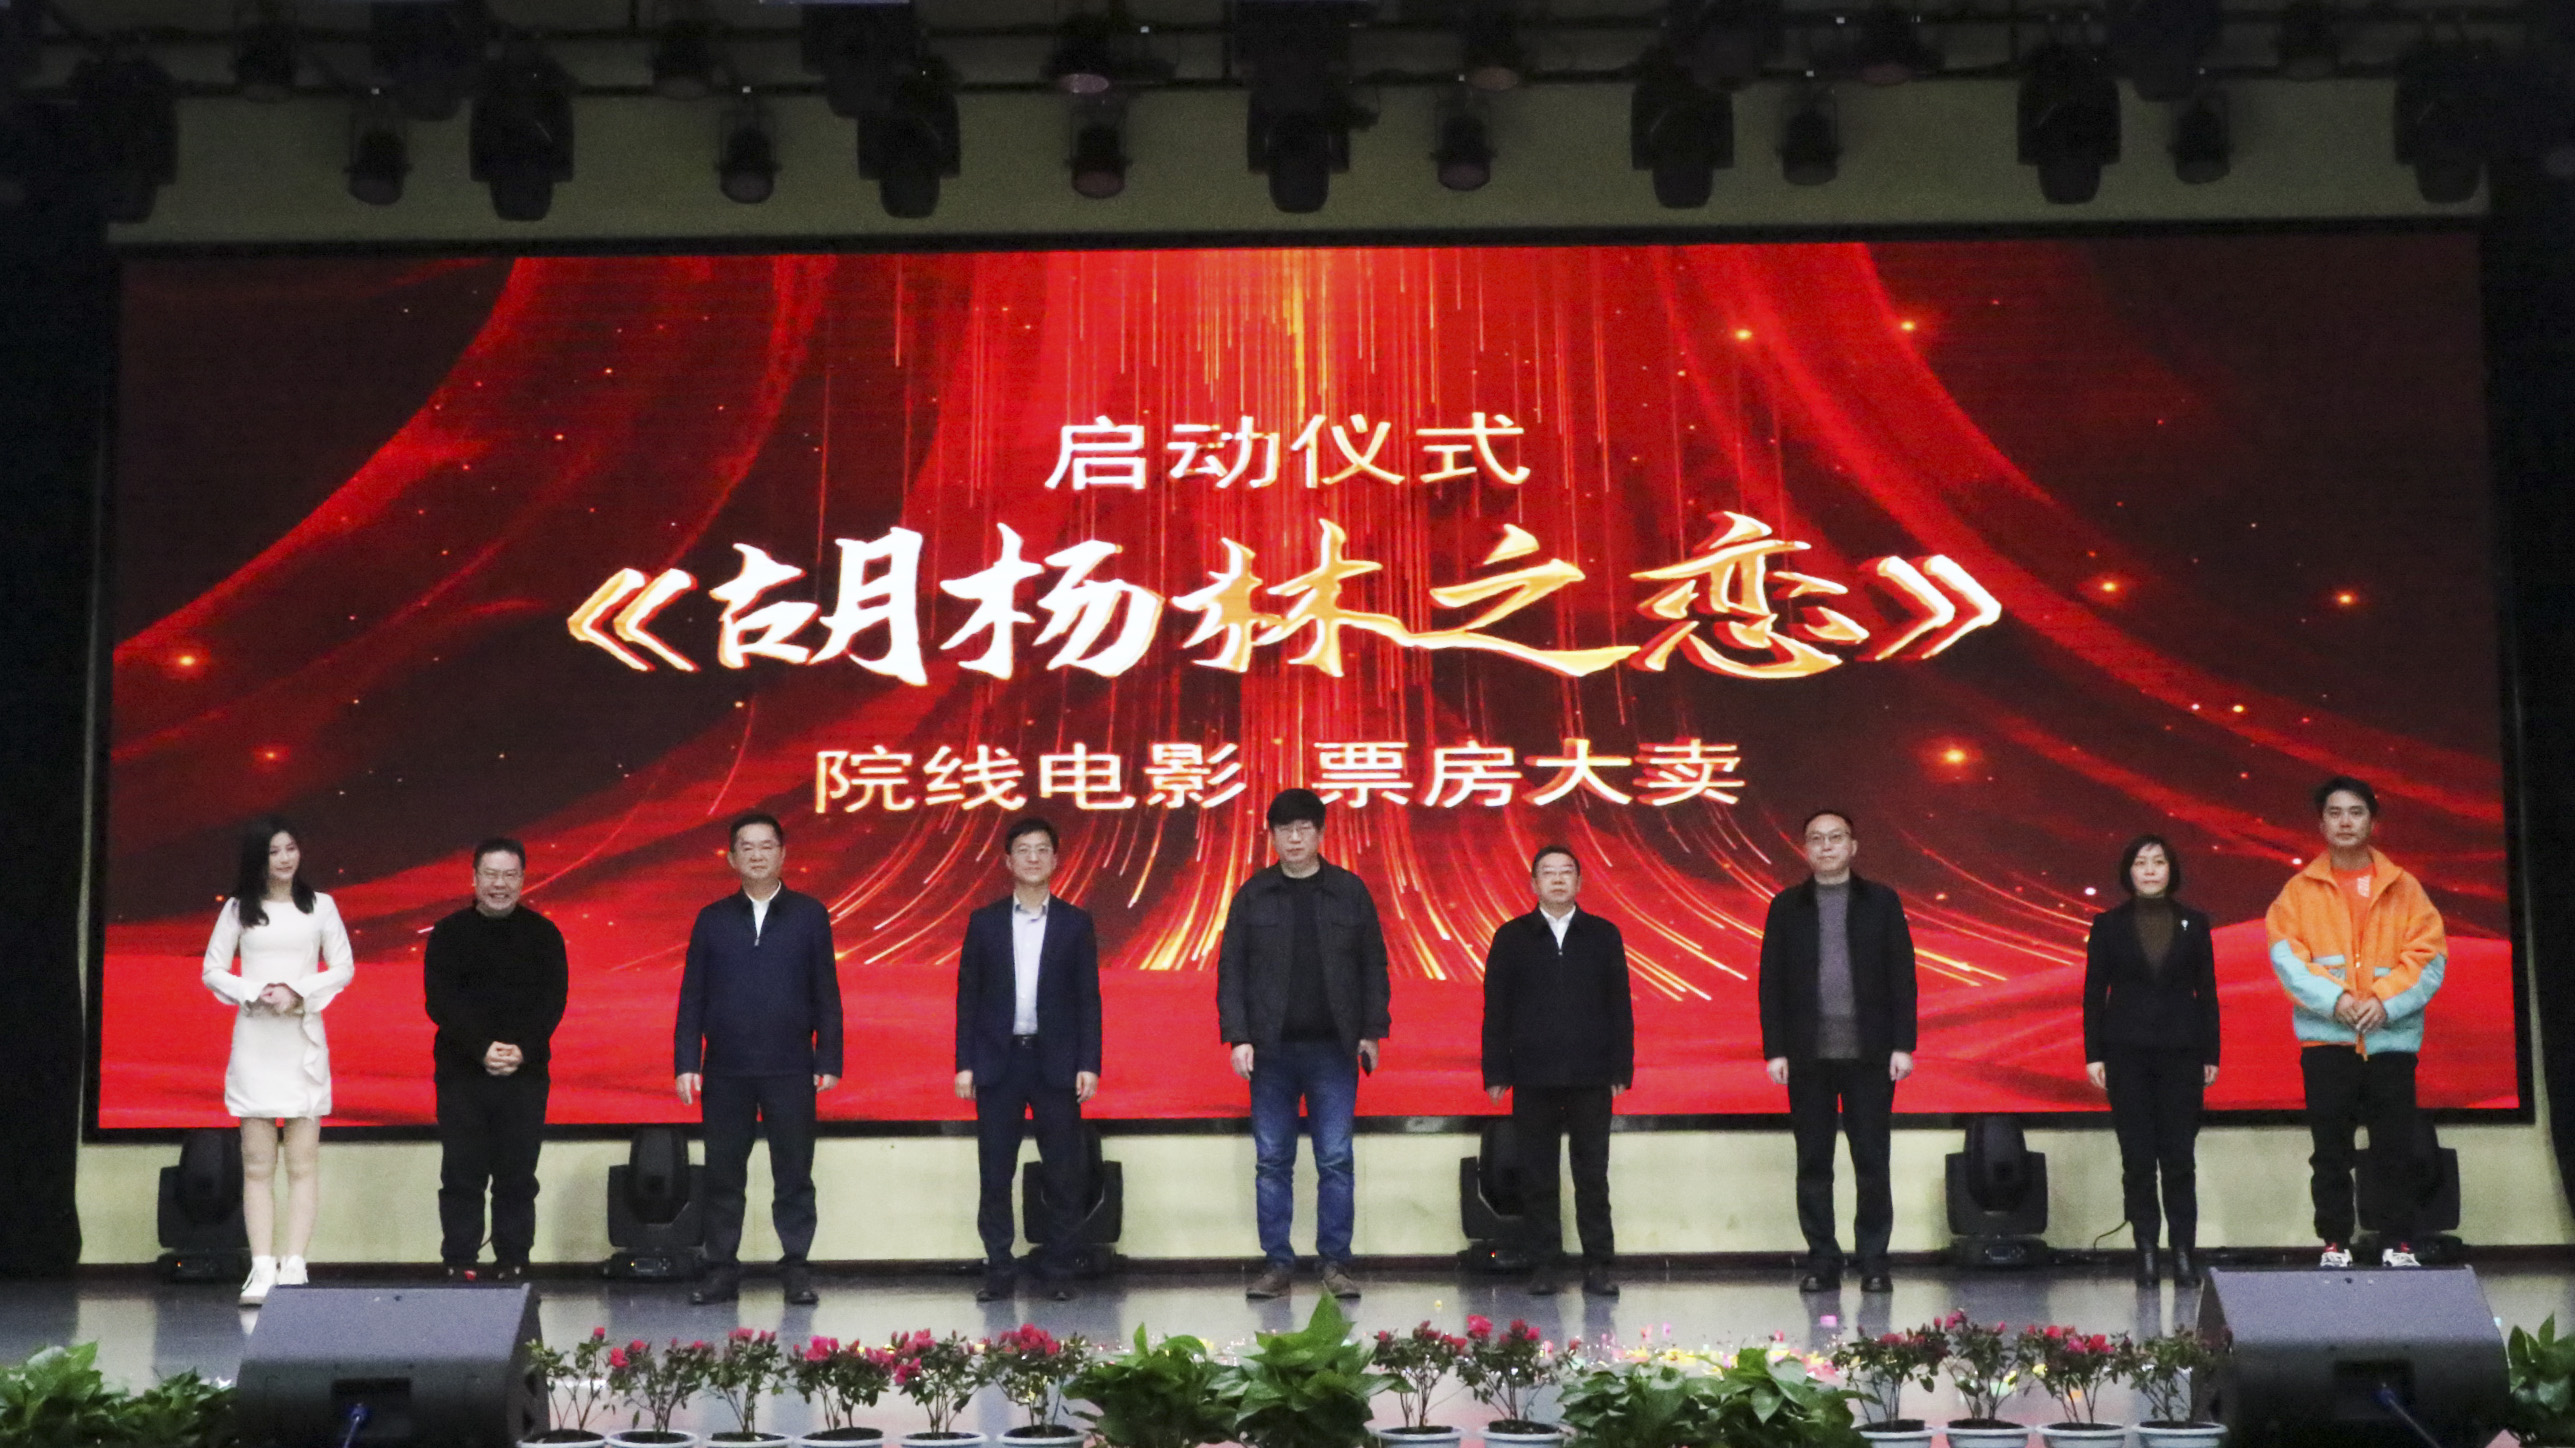 院线电影《胡杨林之恋》首映仪式圆满举行，2月14日全国上映敬请期待。 